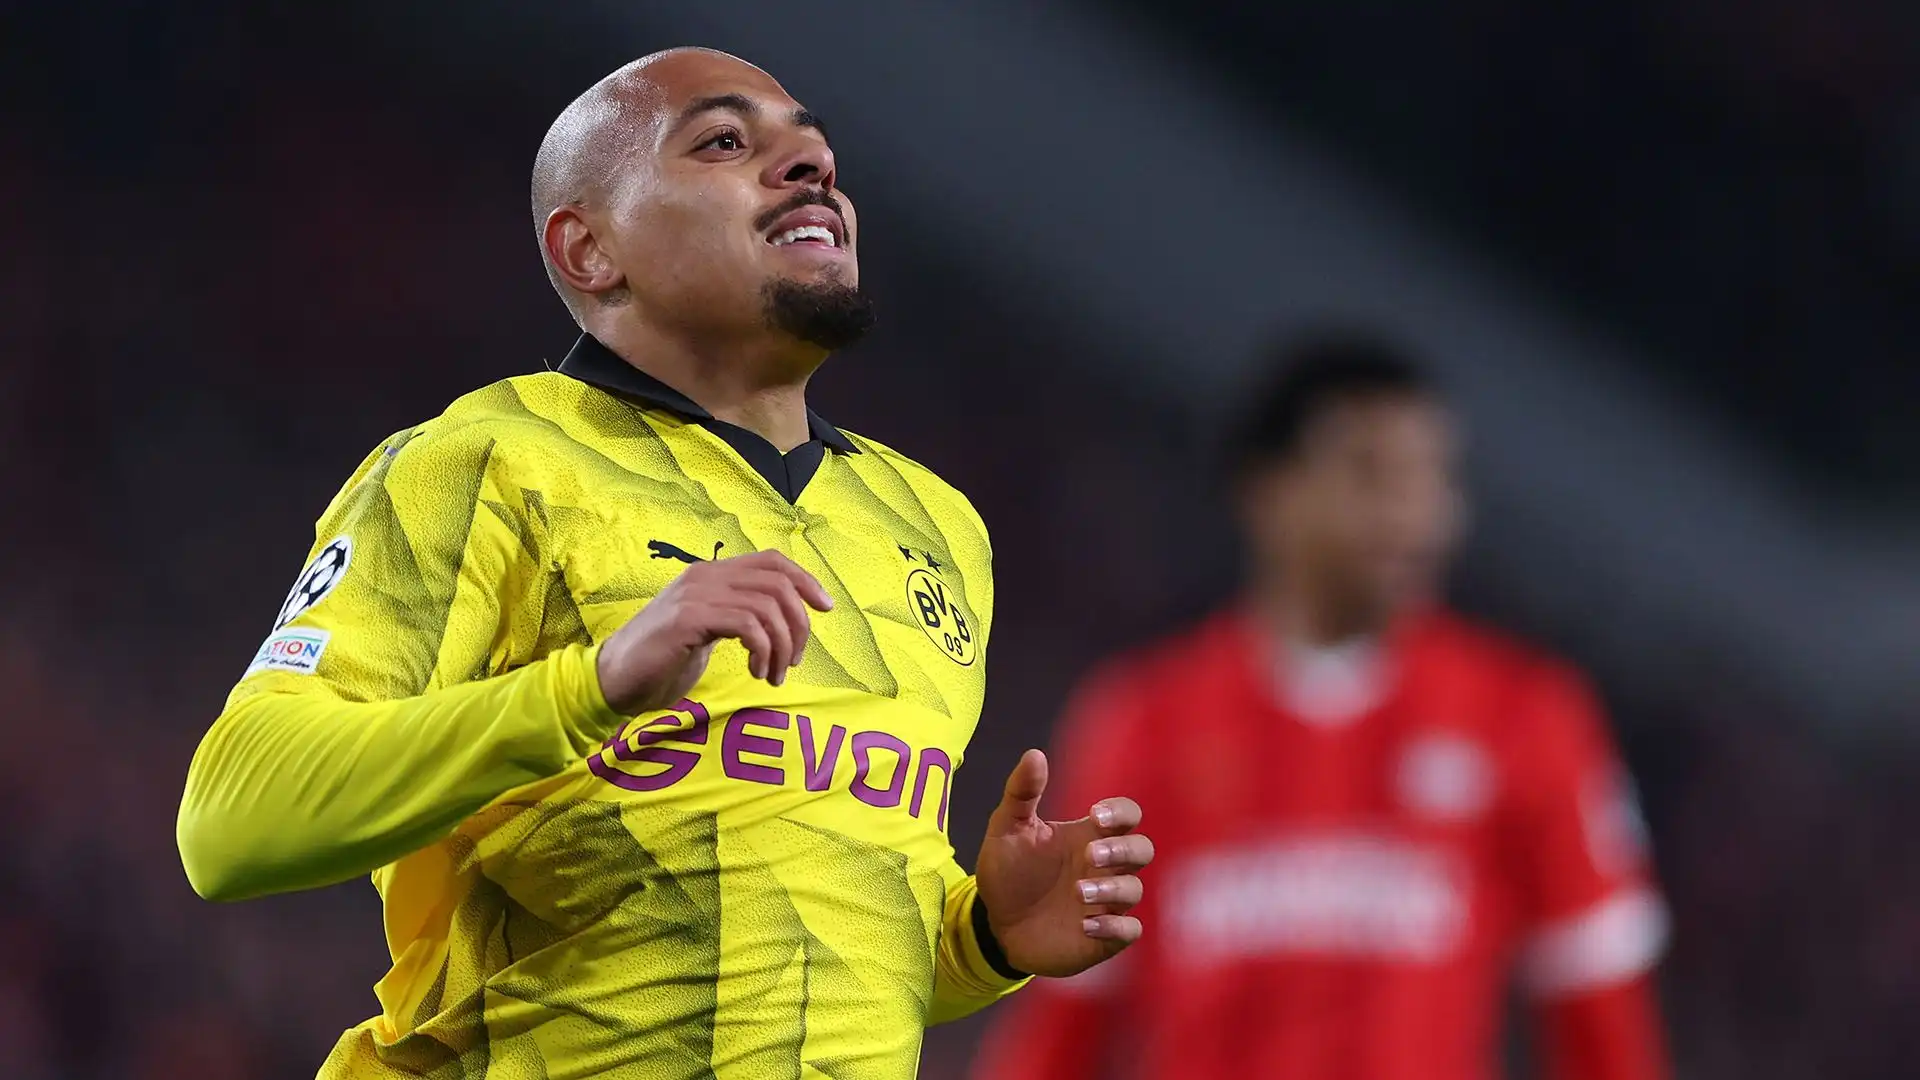 Il Borussia Dortmund non si opporrebbe ad una sua cessione se arrivasse l'offerta giusta